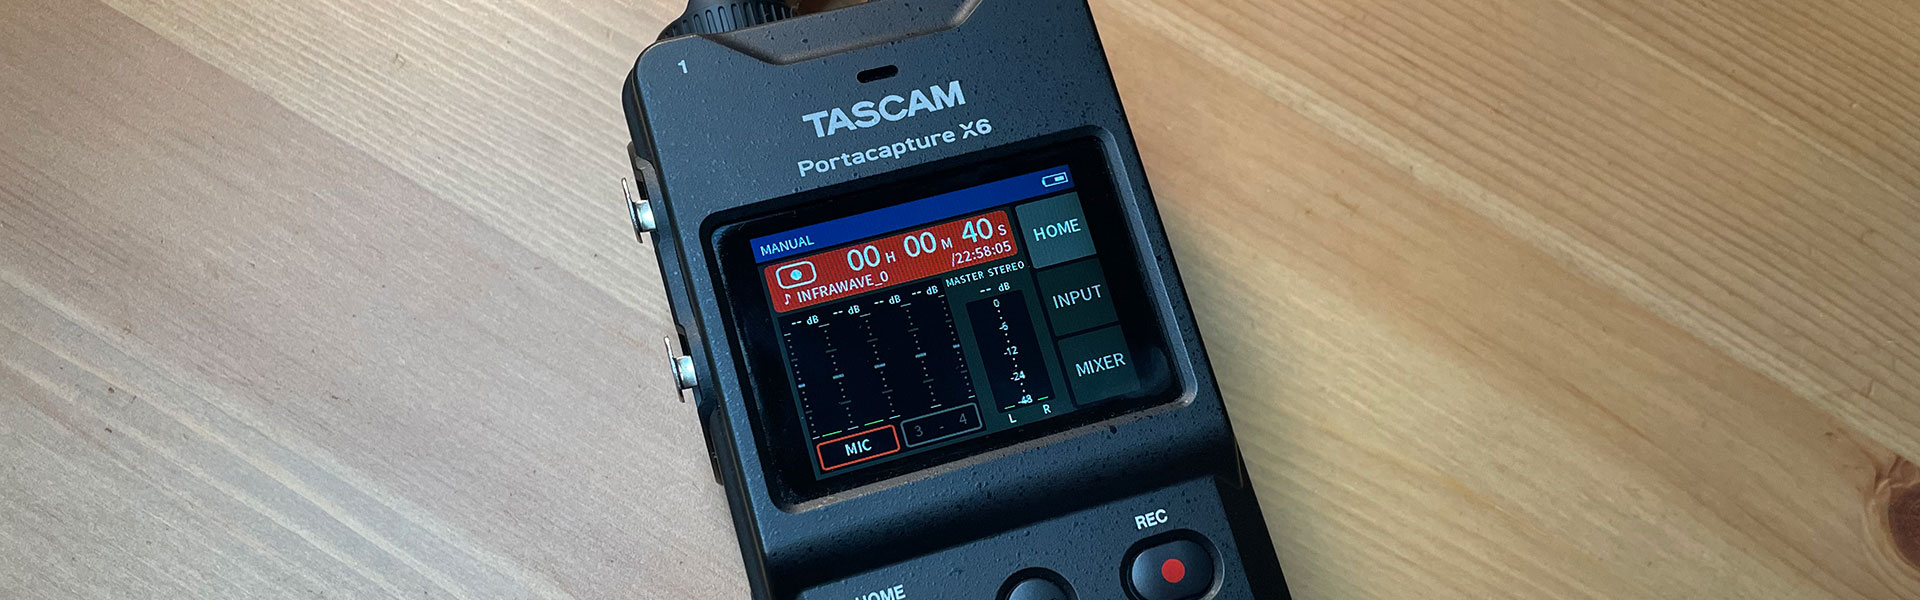 Test: Tascam X6 - Rewolucyjny rejestrator audio